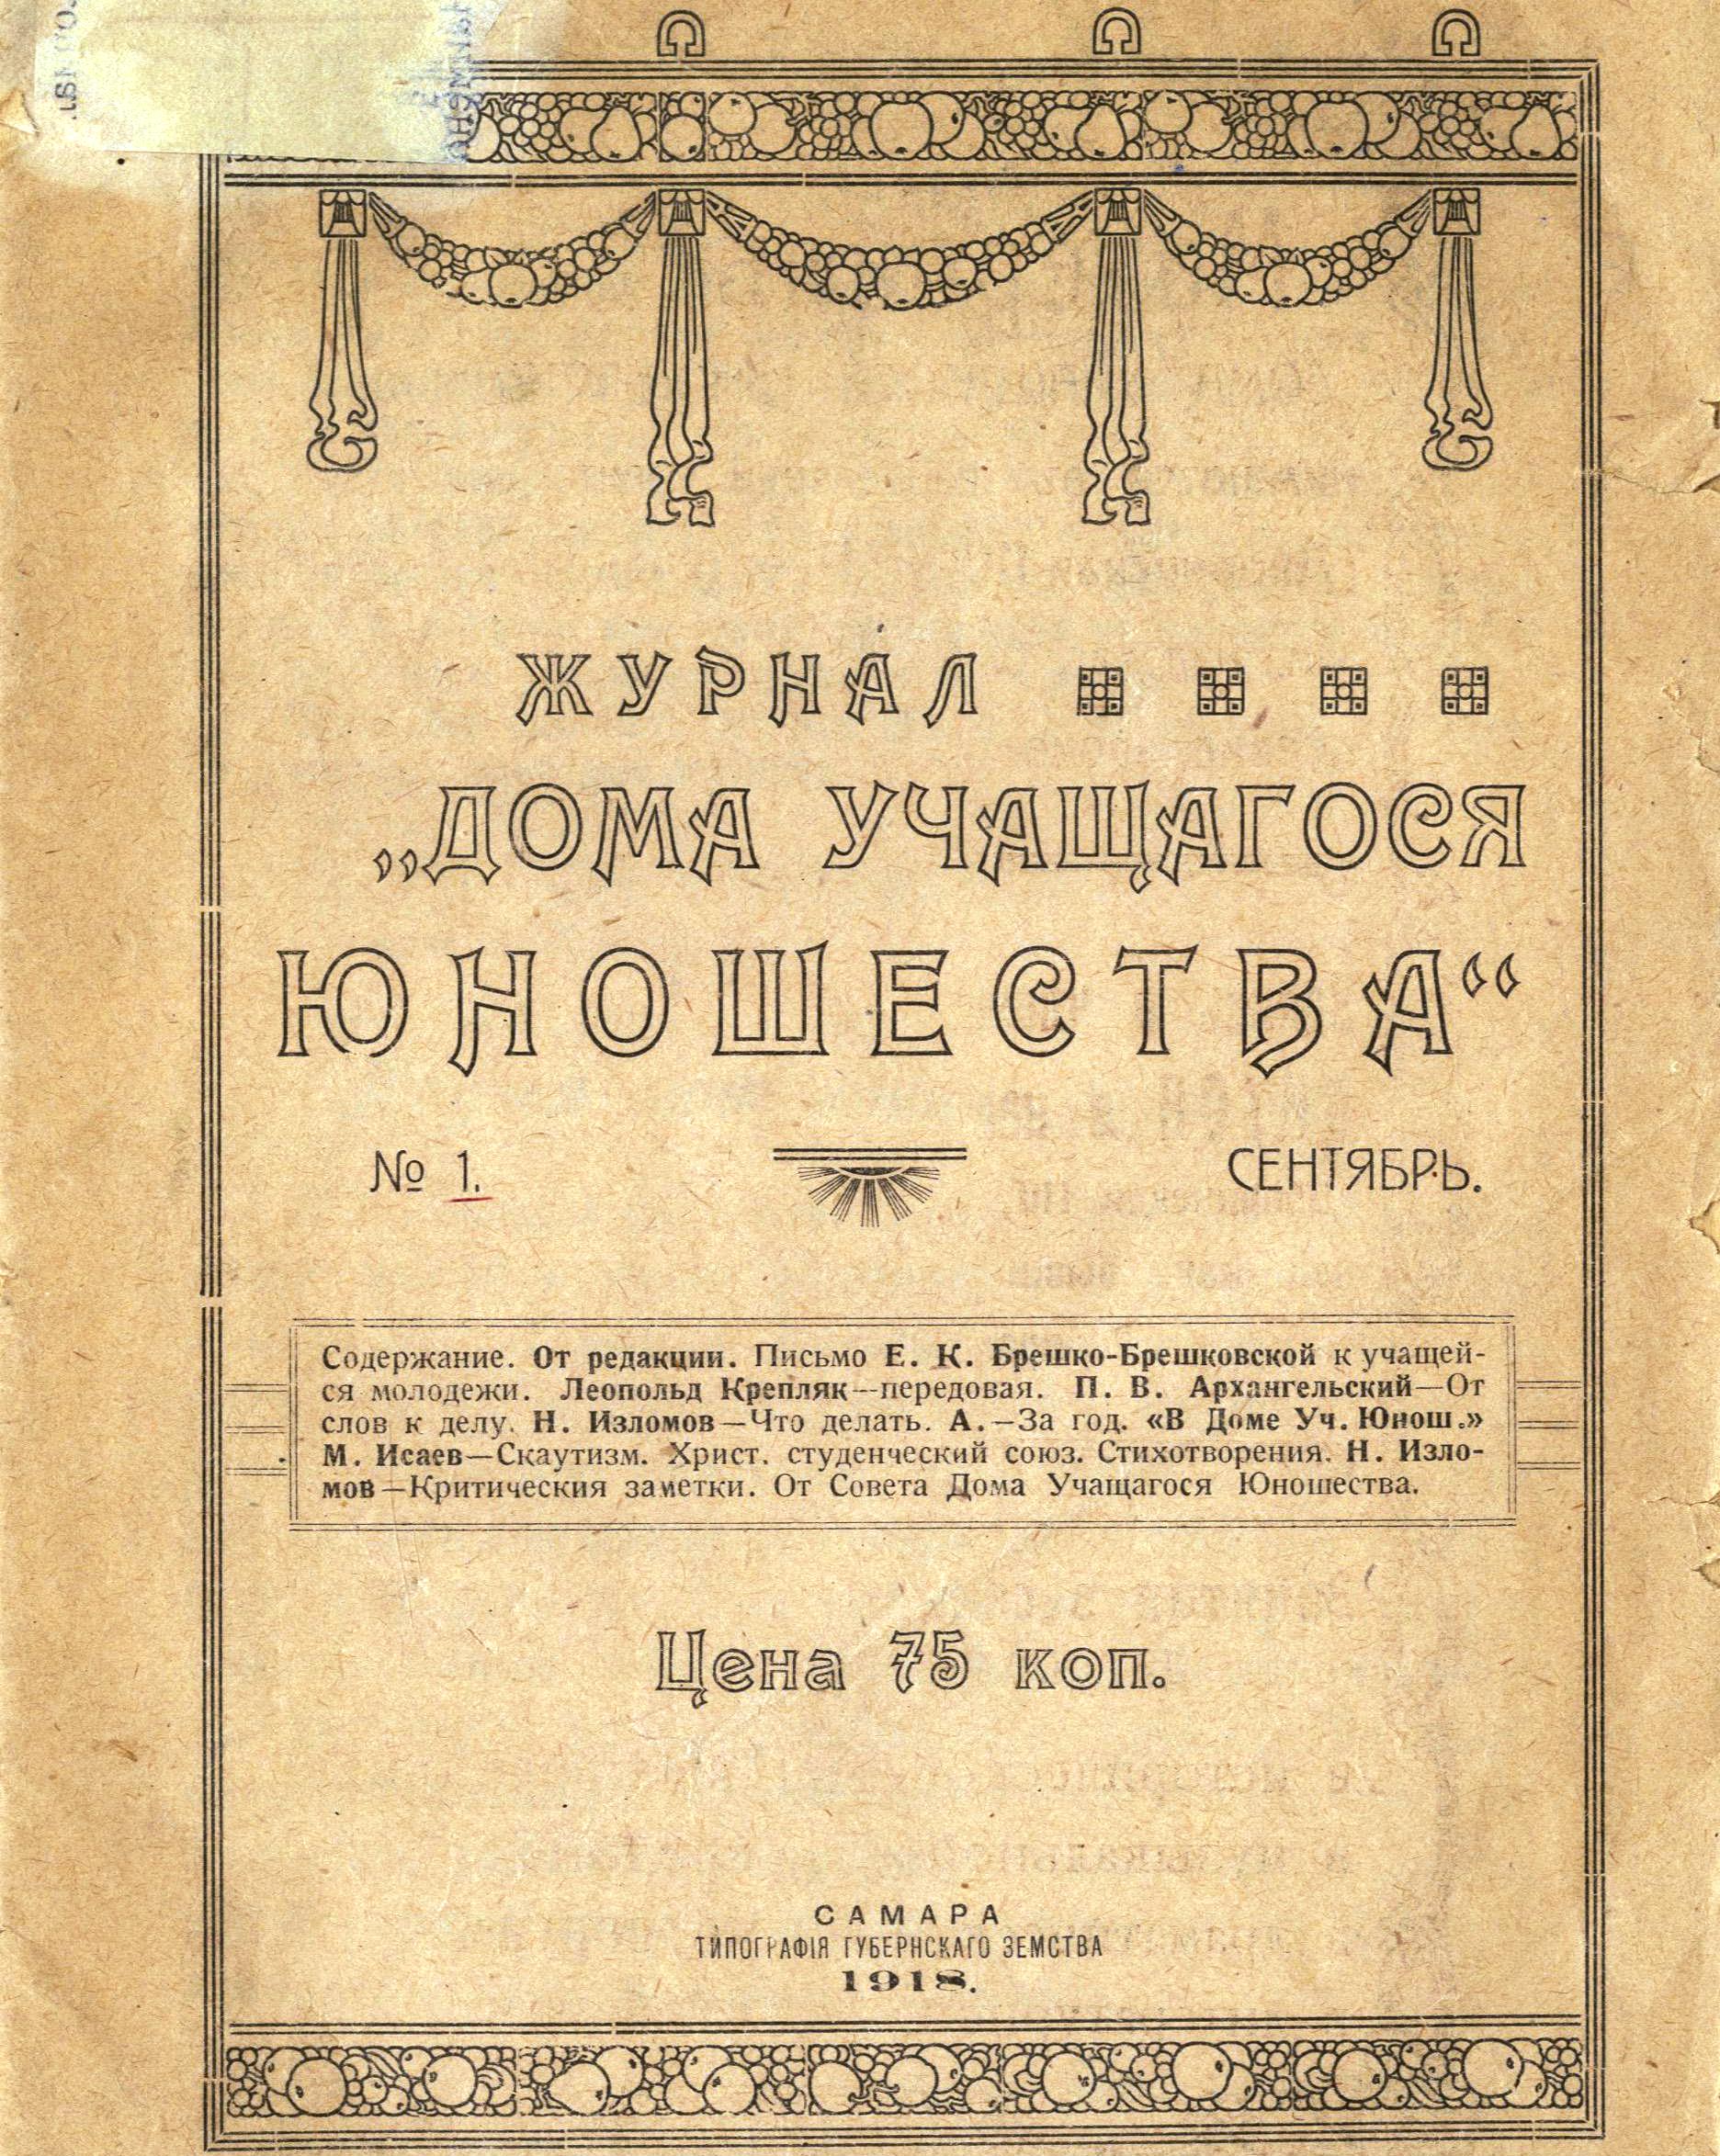 06 Обложка журнала Дома учащегося юношества. 1918 год